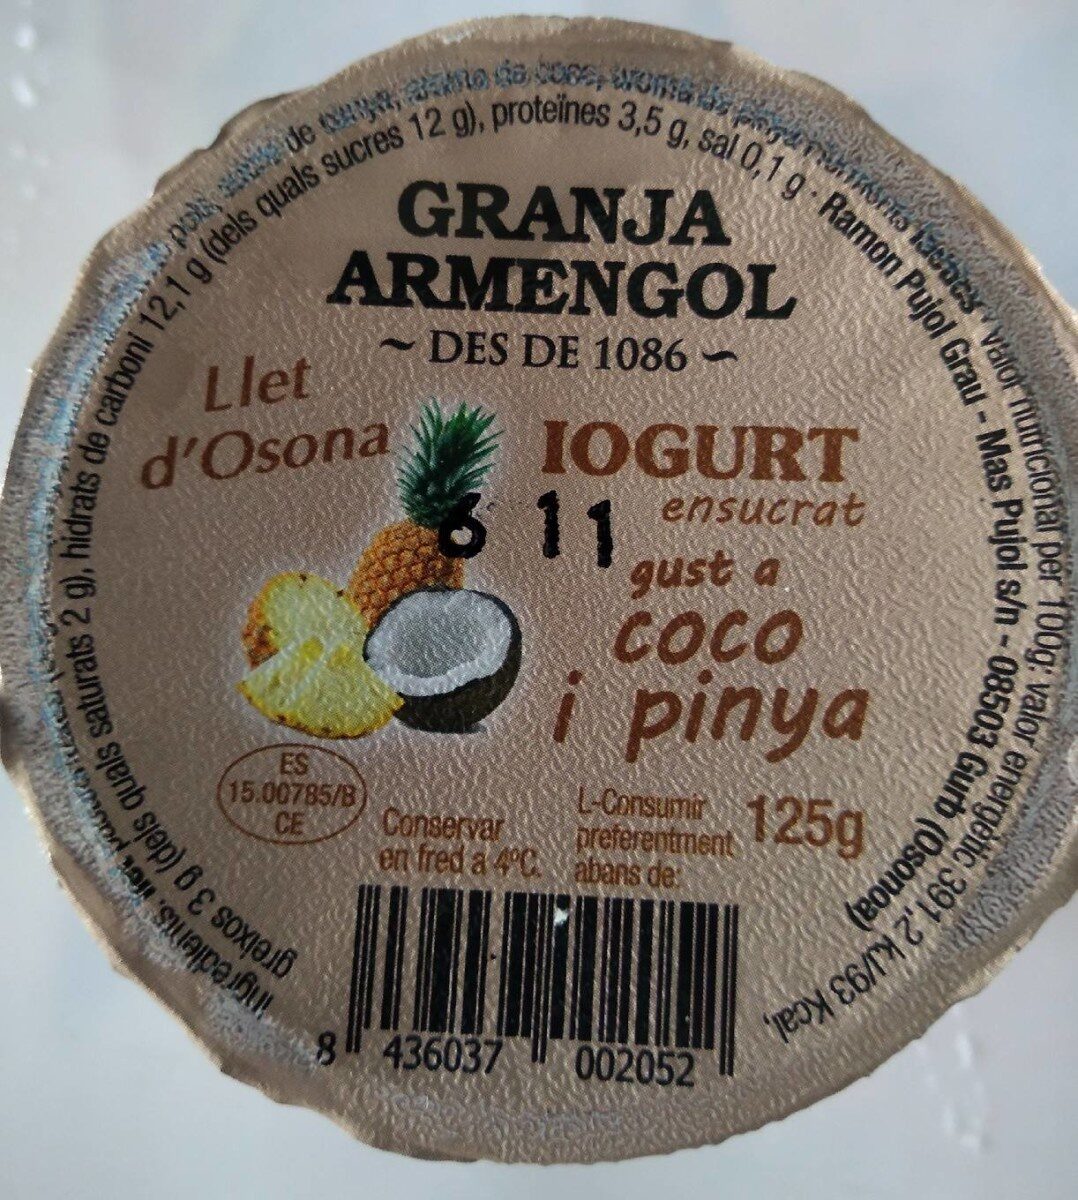 Iogurt Coco Pinya - Product - es